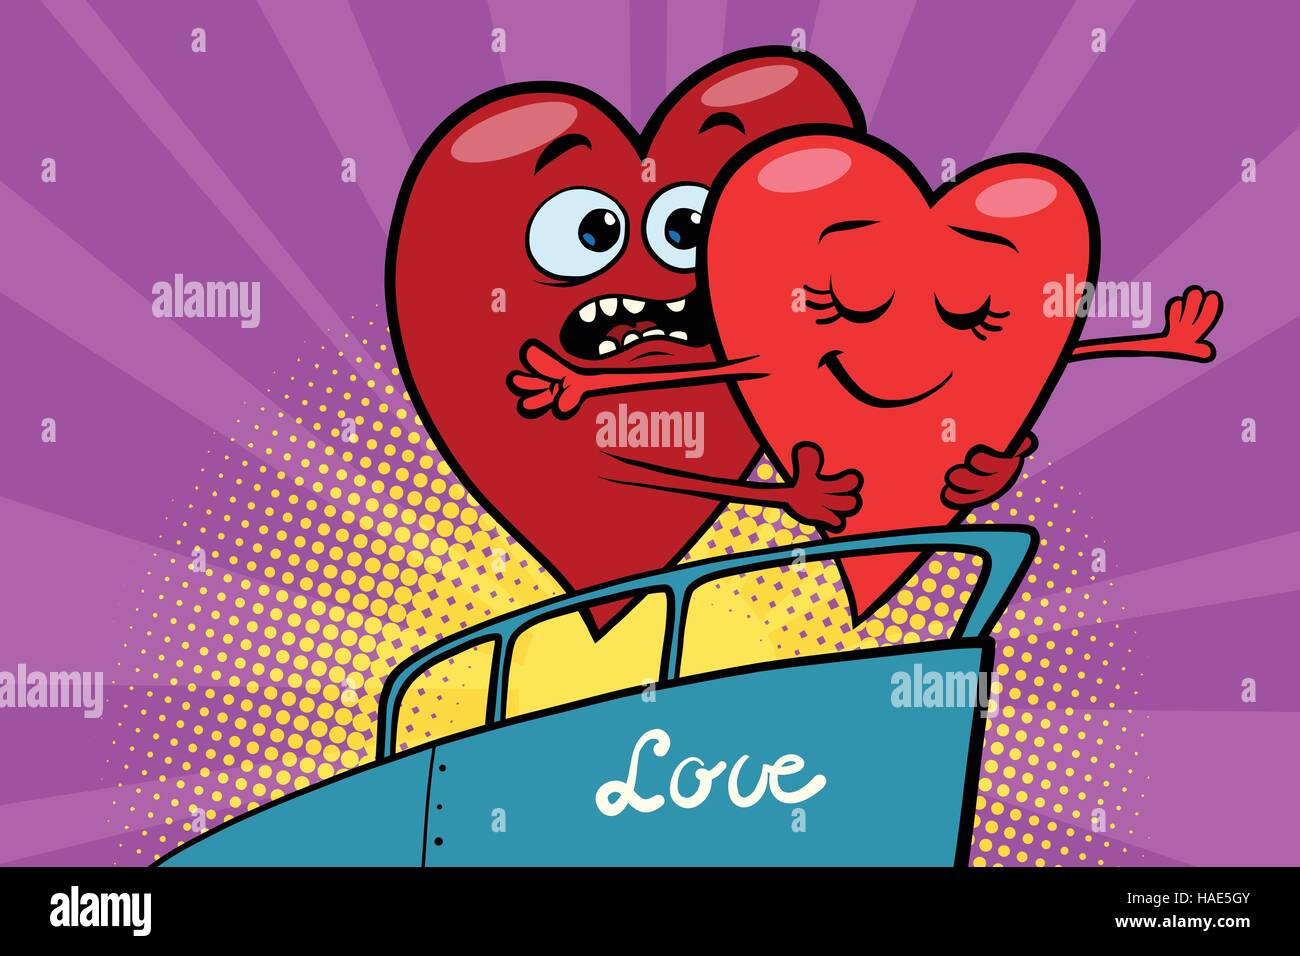 Saint Valentin coeur rouge flottant sur un bateau Illustration de Vecteur